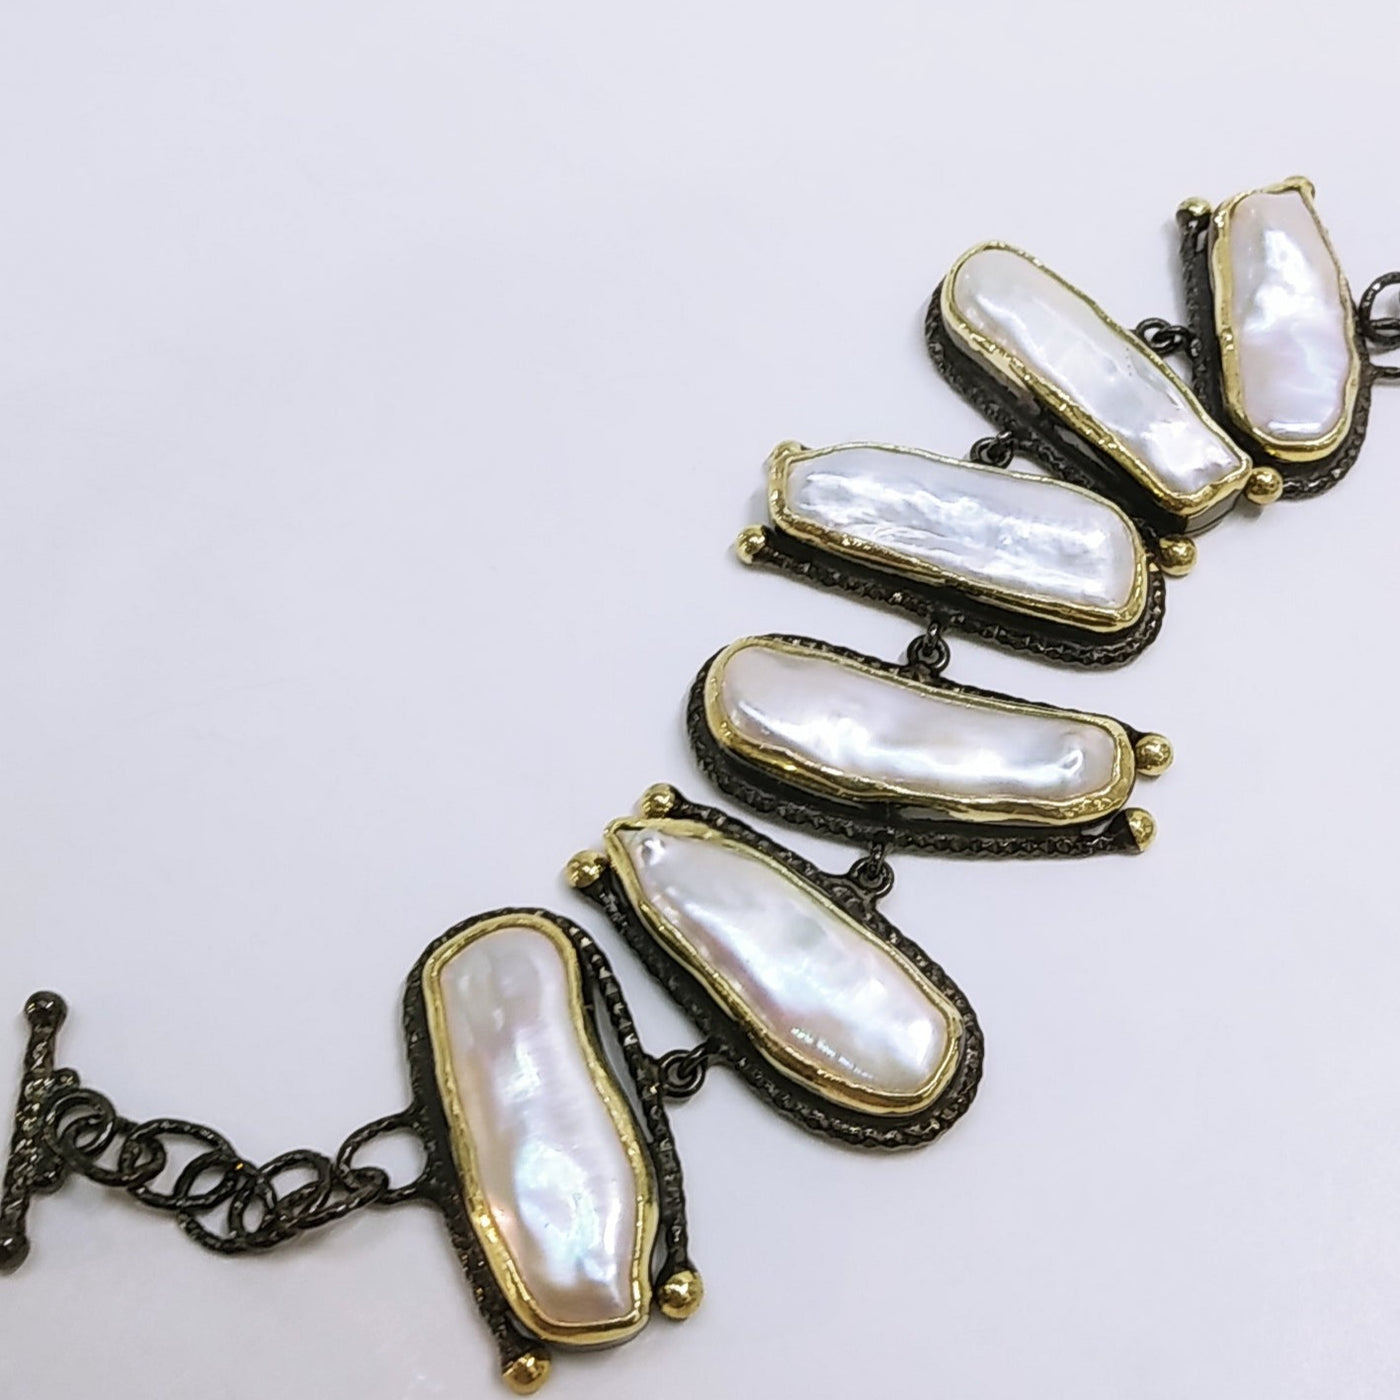 "Stairway to Heaven" 7-8" Bracelet - Stick Pearls Black Sterling, 18K